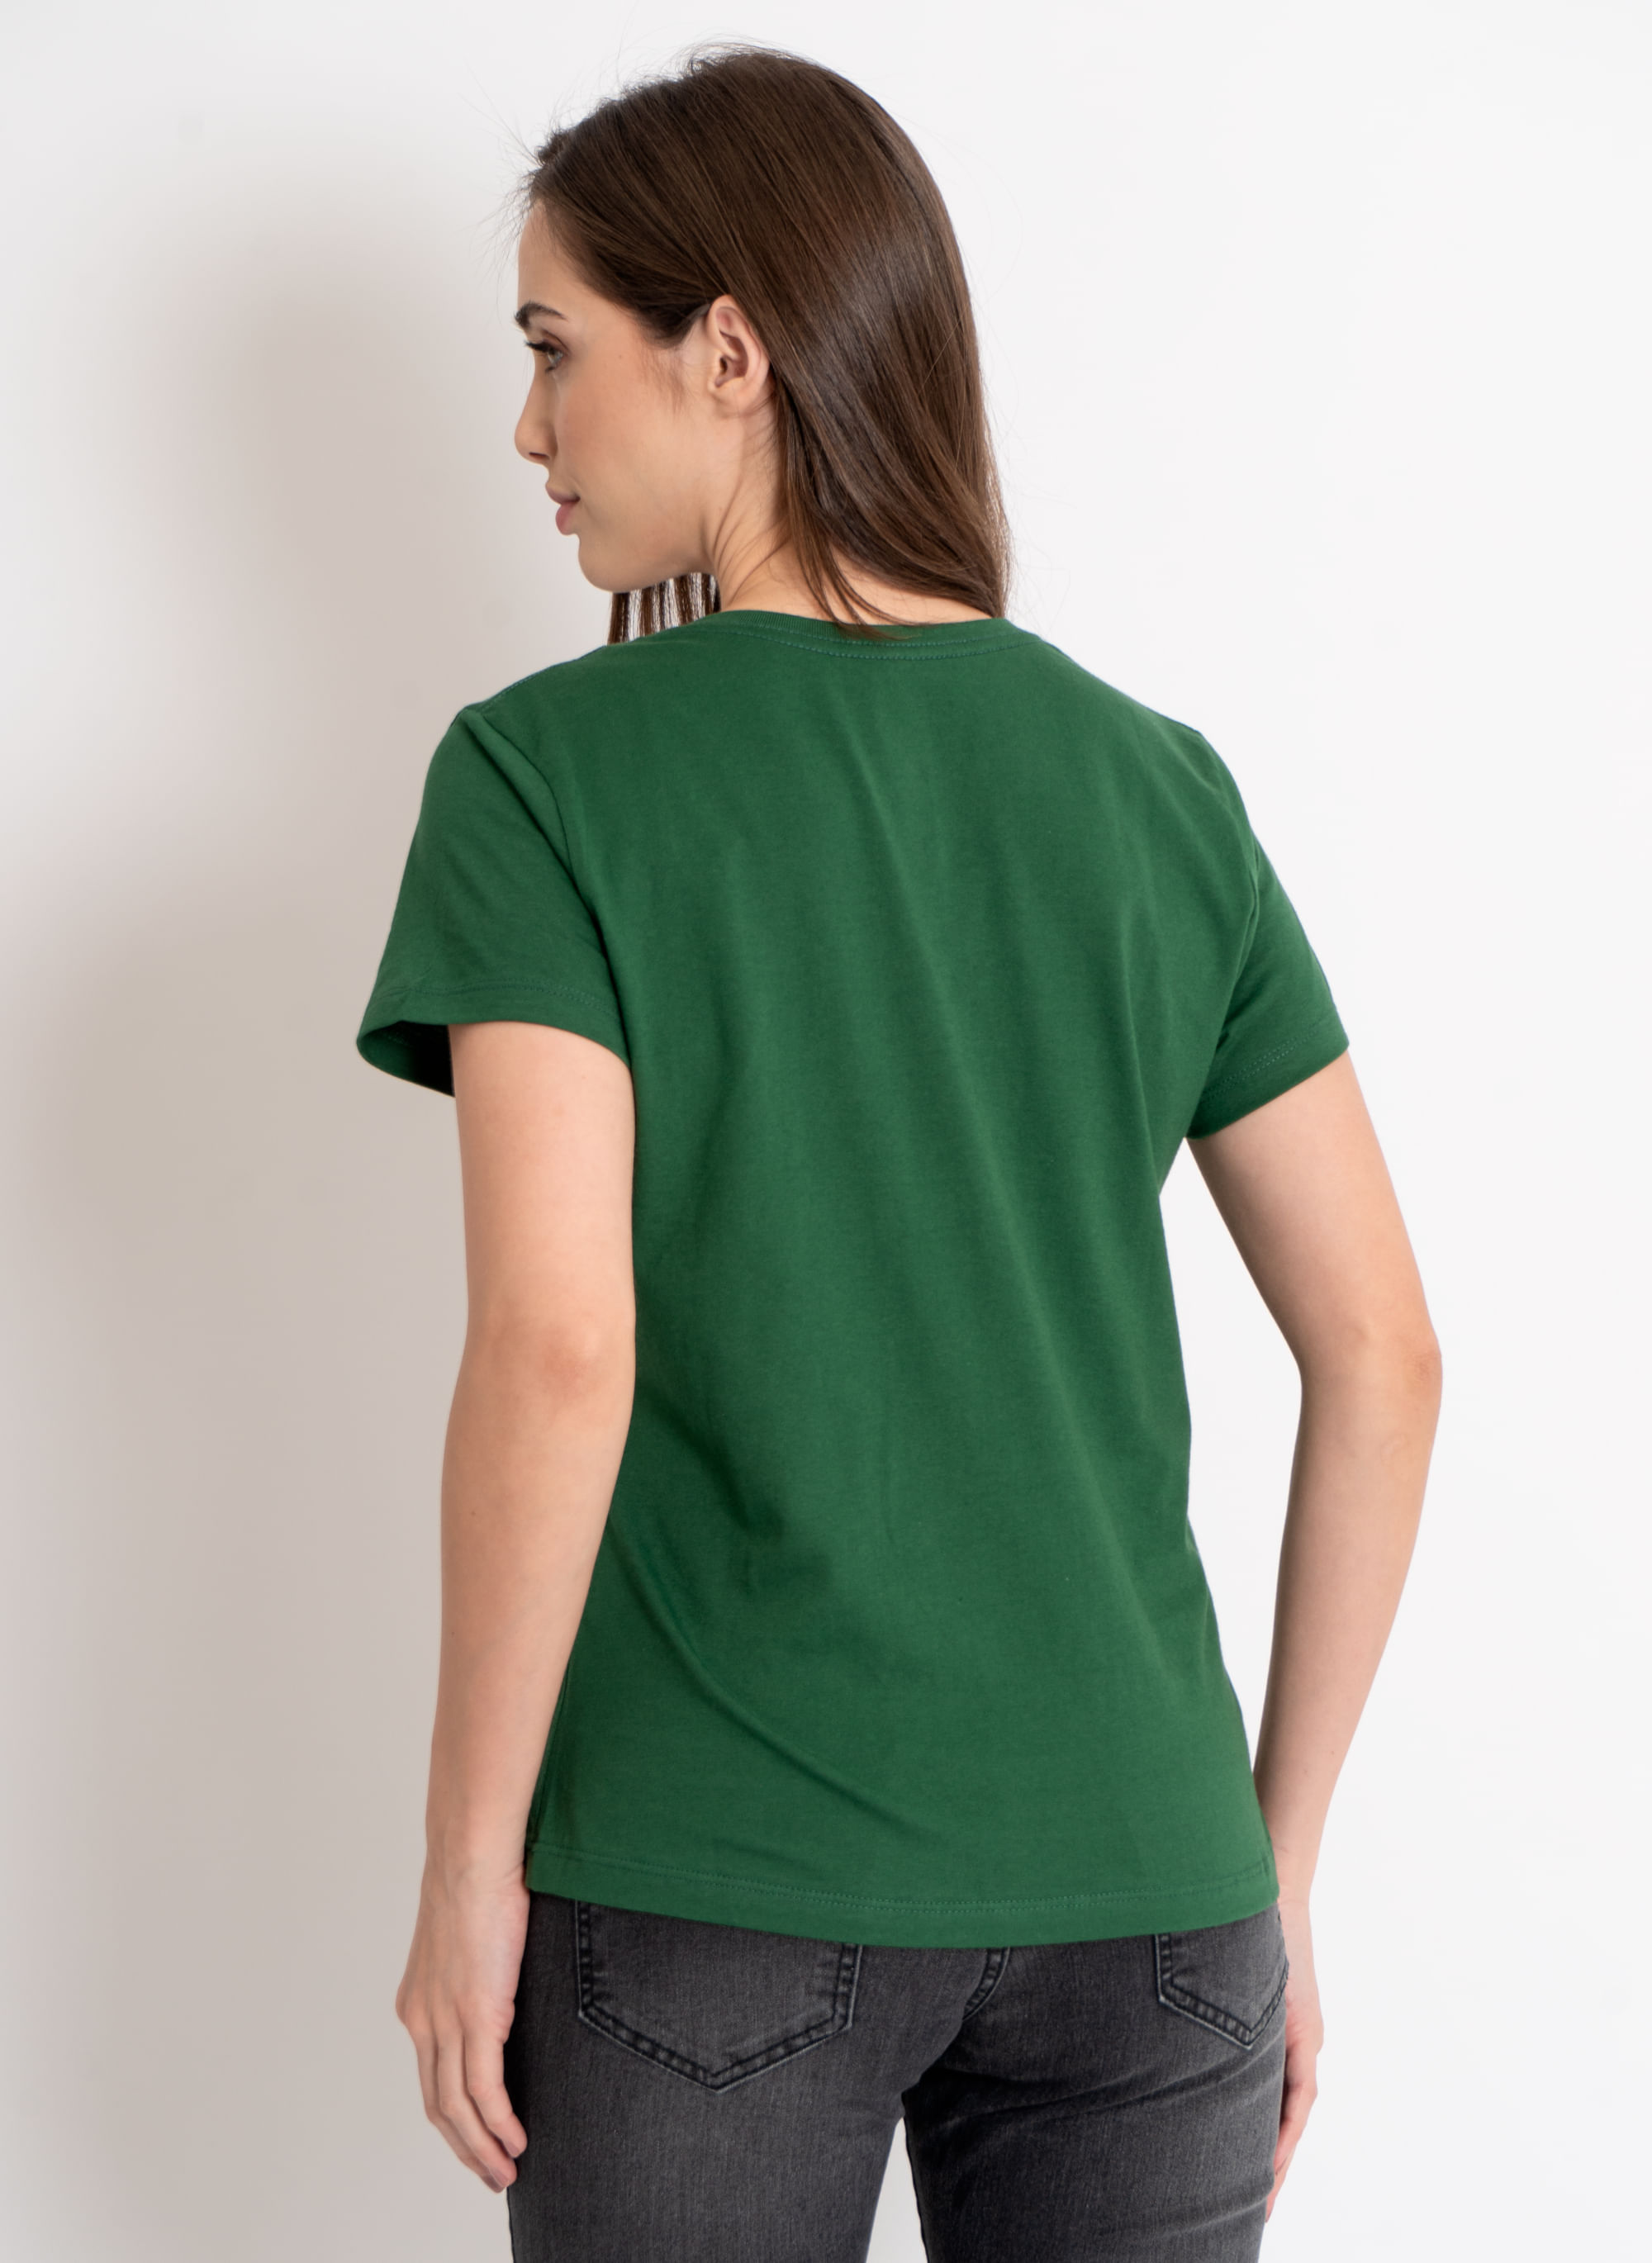 Camiseta-Feminina-Aleatory-Estampada-Fine-Verde-Verde-P